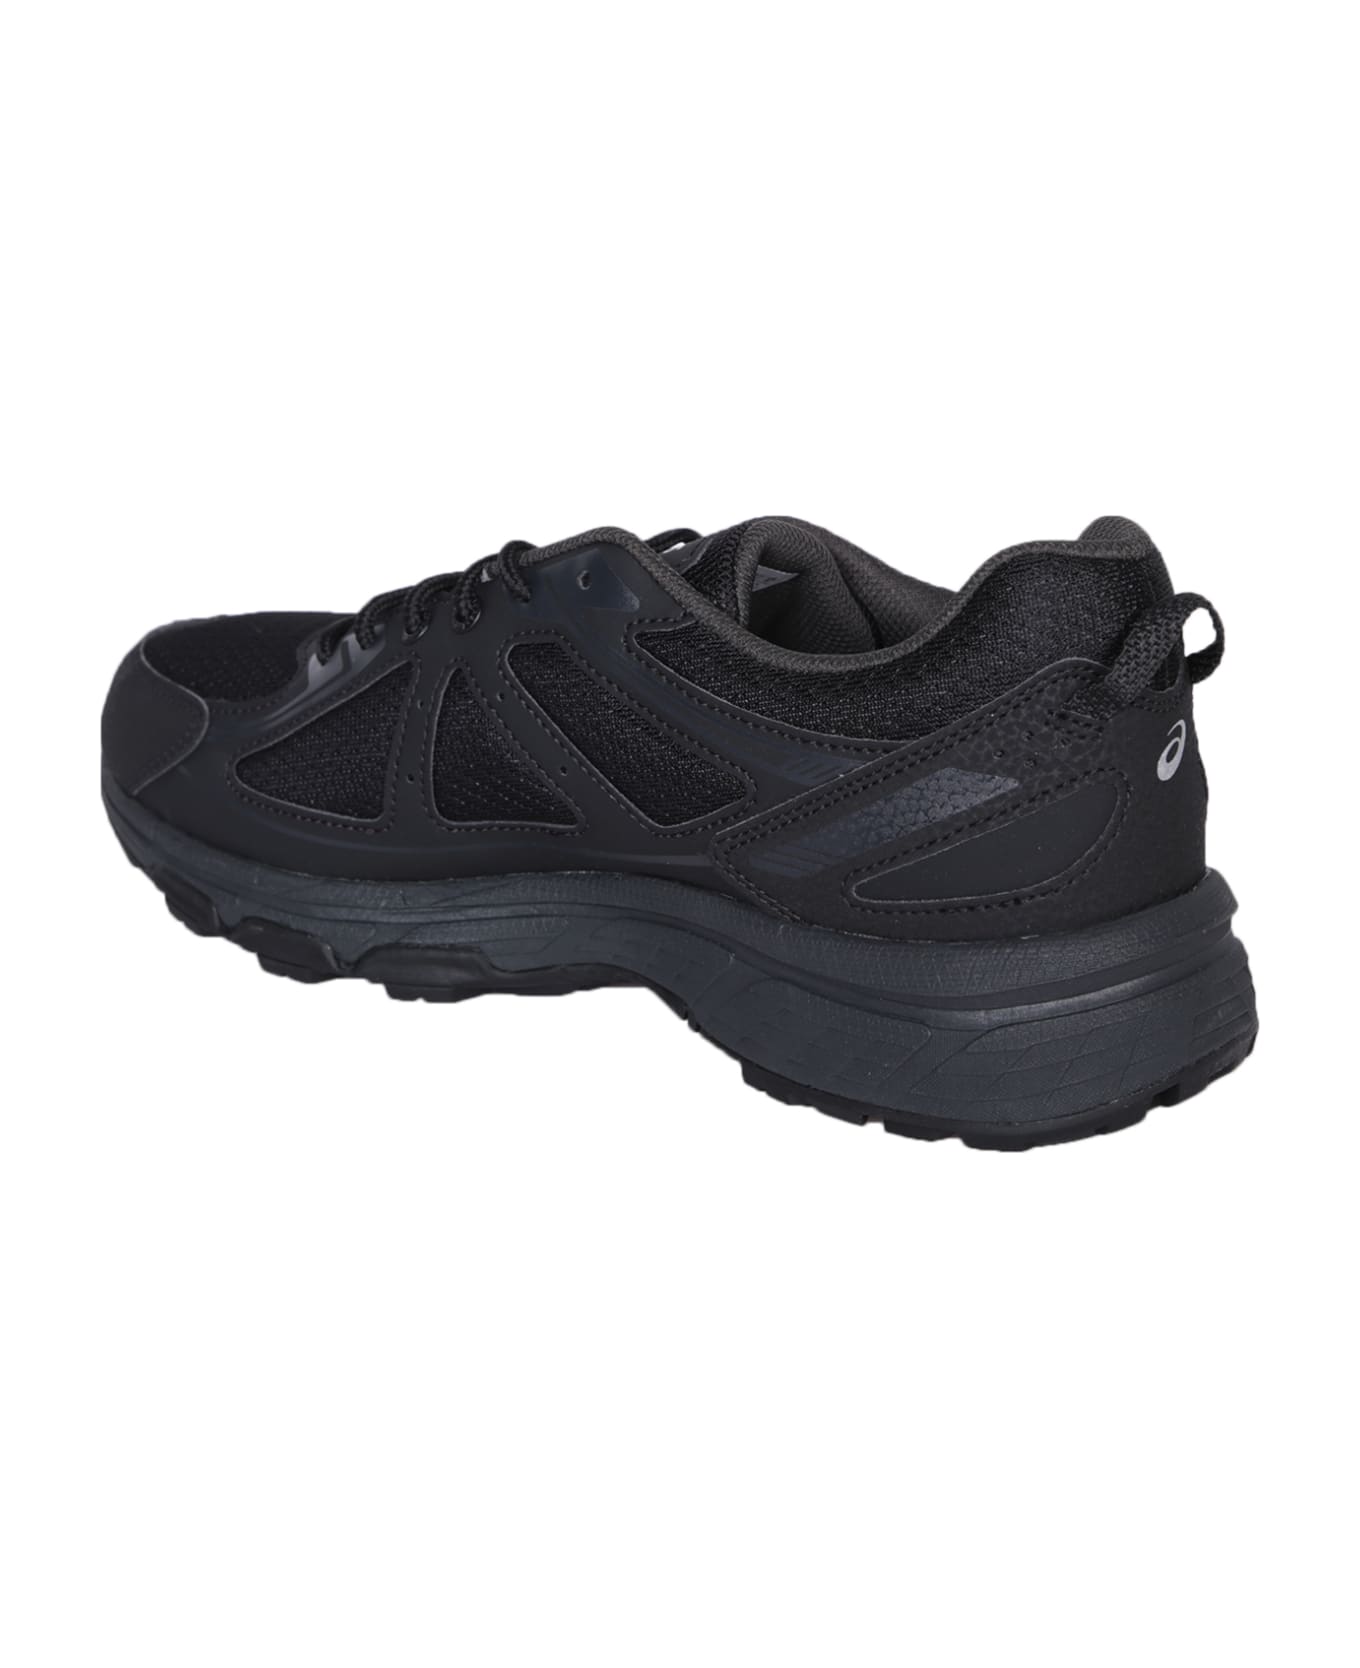 Asics Gel-venture 6 Black Sneakers - Black スニーカー